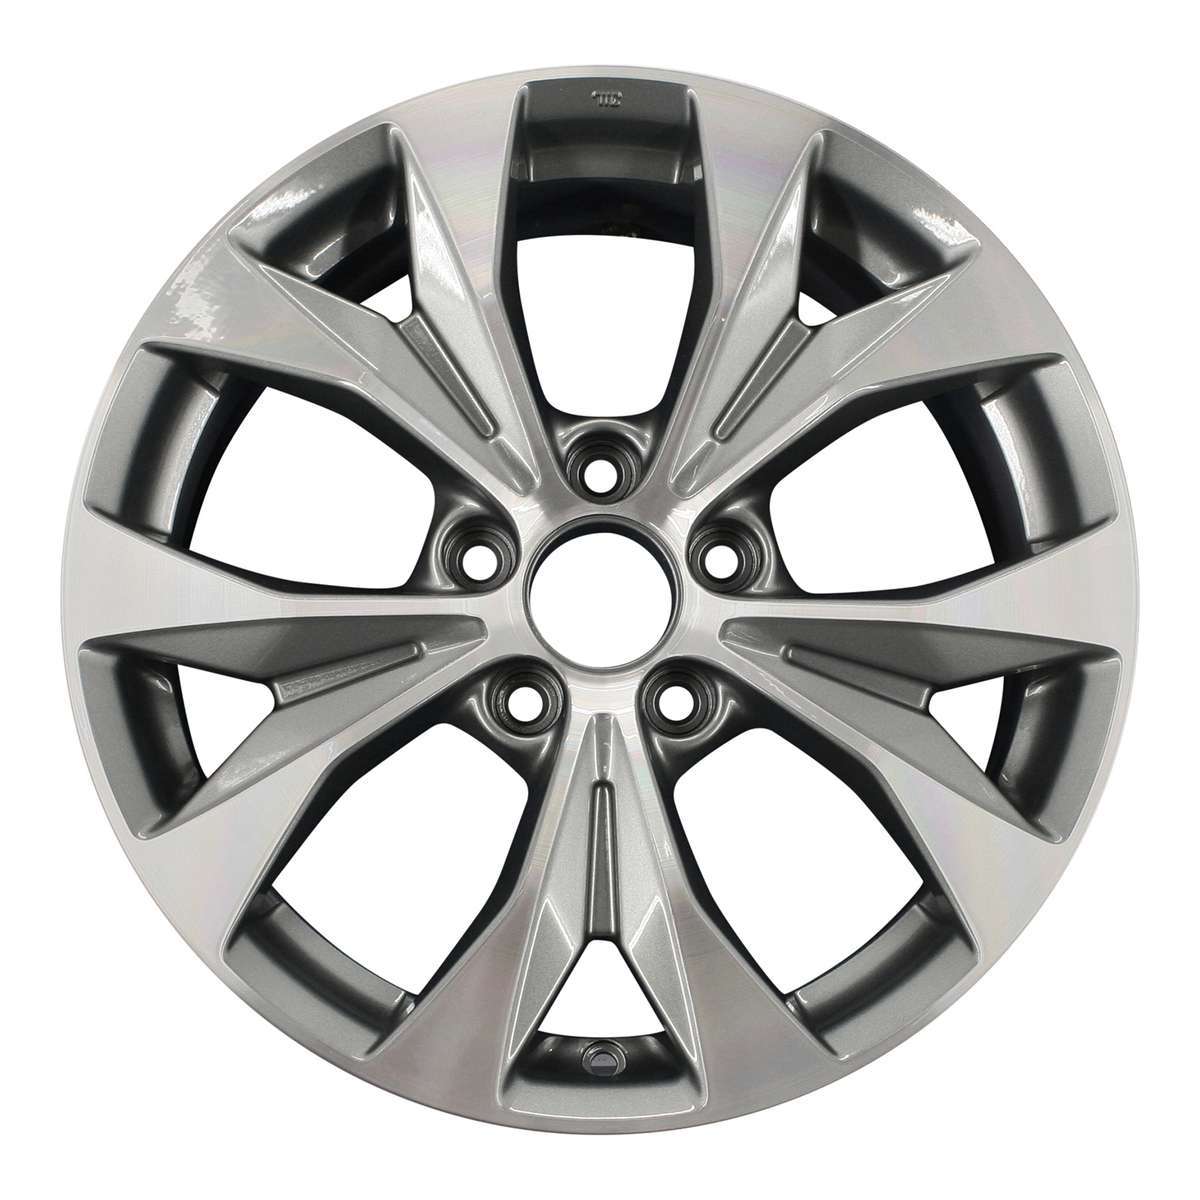 2012 Honda Civic 17" OEM Wheel Rim W64025MC